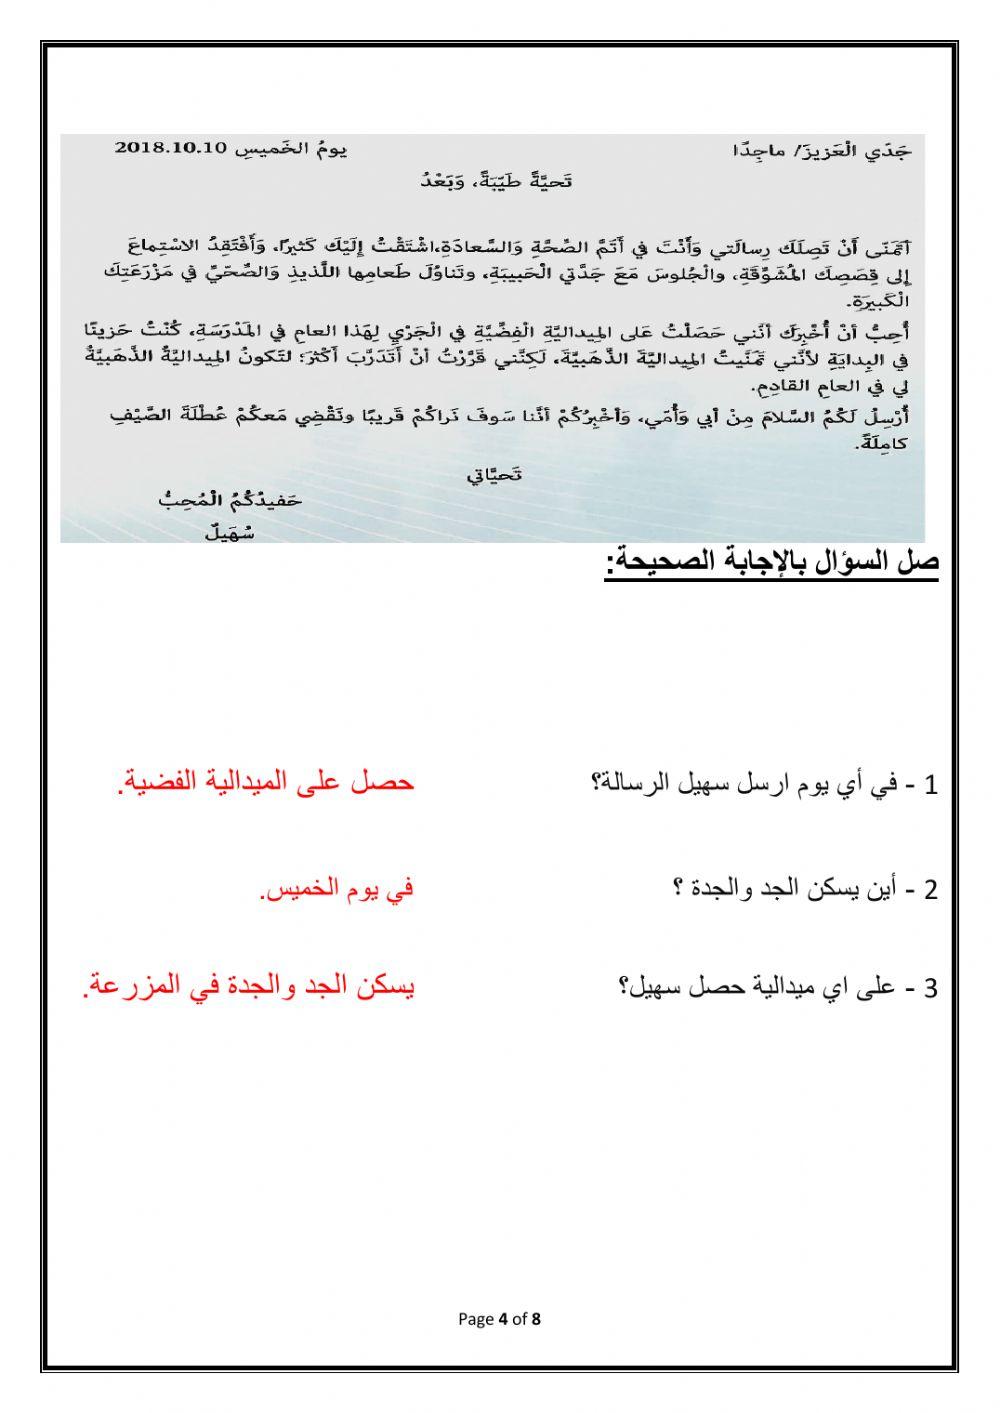 Arabic Revision Grade (5)